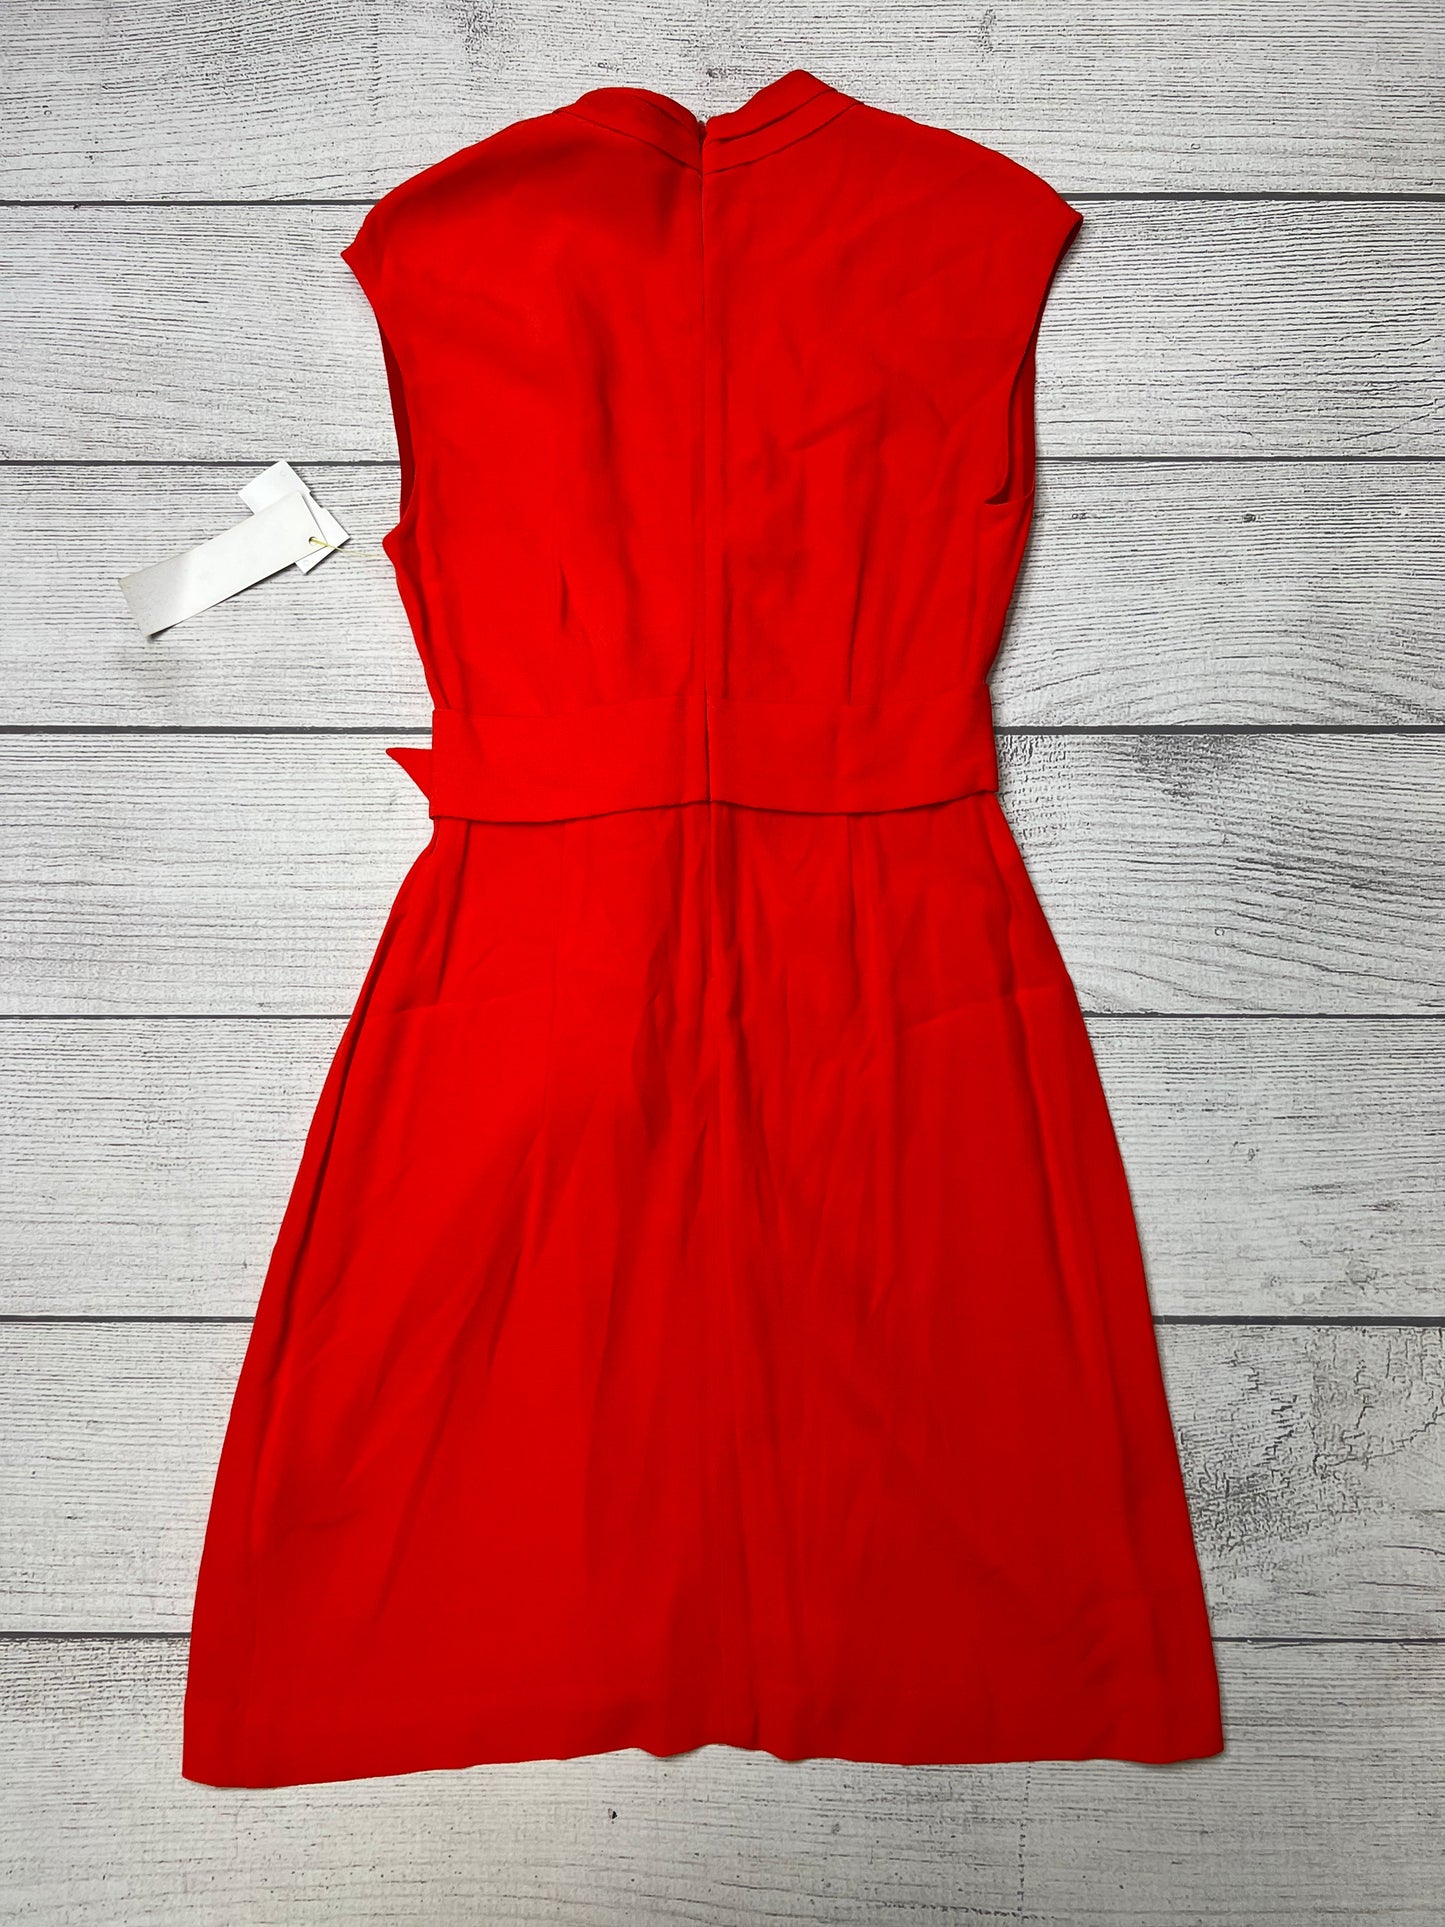 Red Dress Designer Kate Spade, Size 4